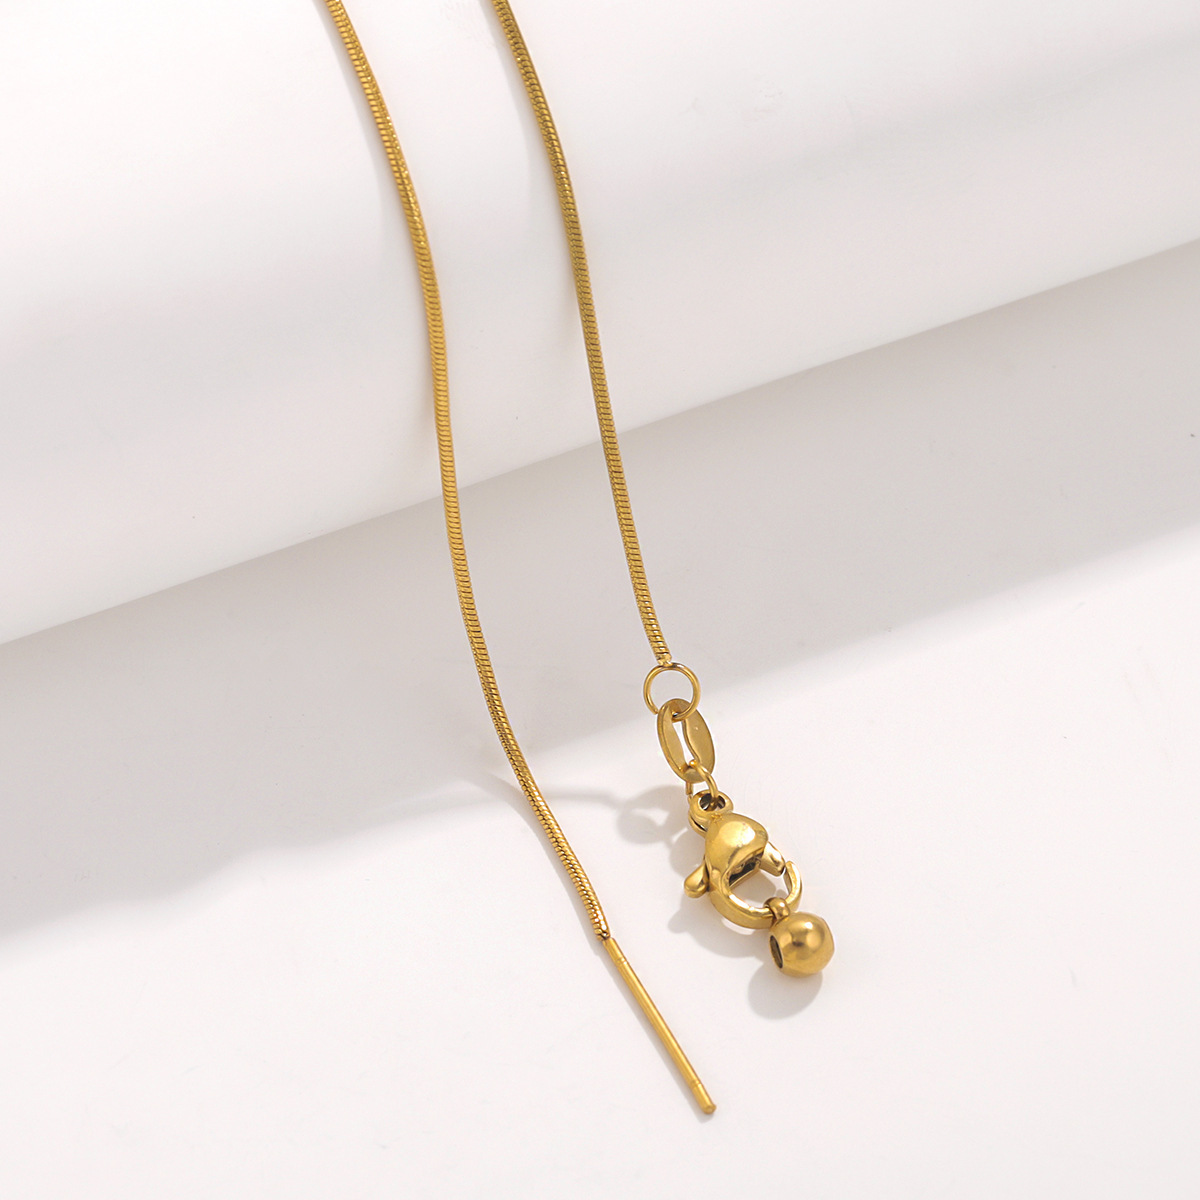 5:Gold - Round snake chain